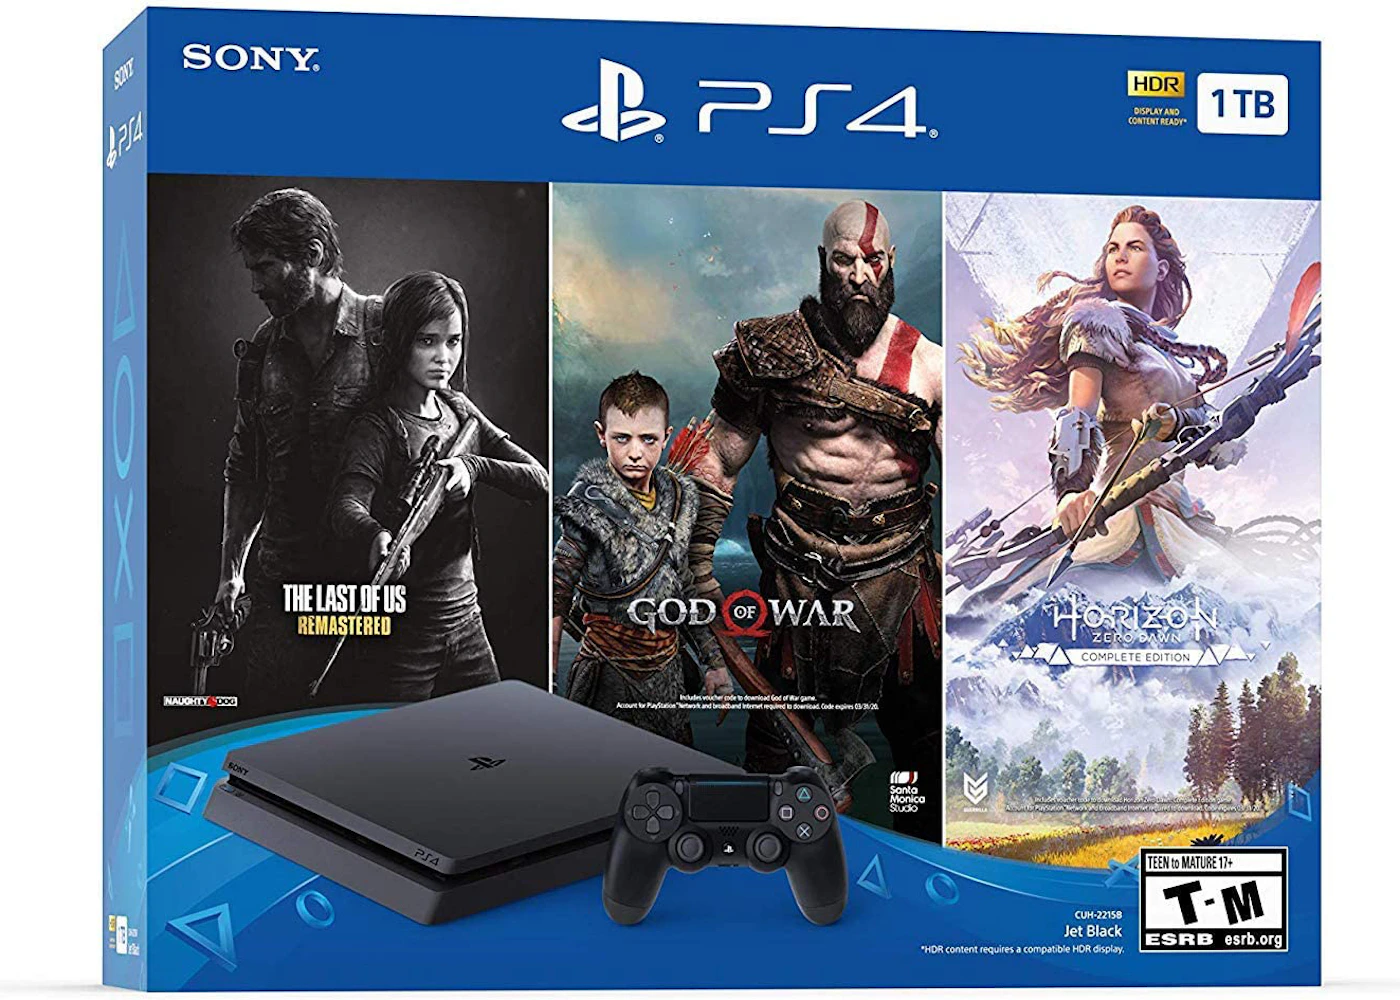 Sony PlayStation 4 PS4 Slim CUH-2216B 1TB Consola Negra Segunda Mano -   Tienda Online Nuevo y Segunda Mano - Envíos gratis!